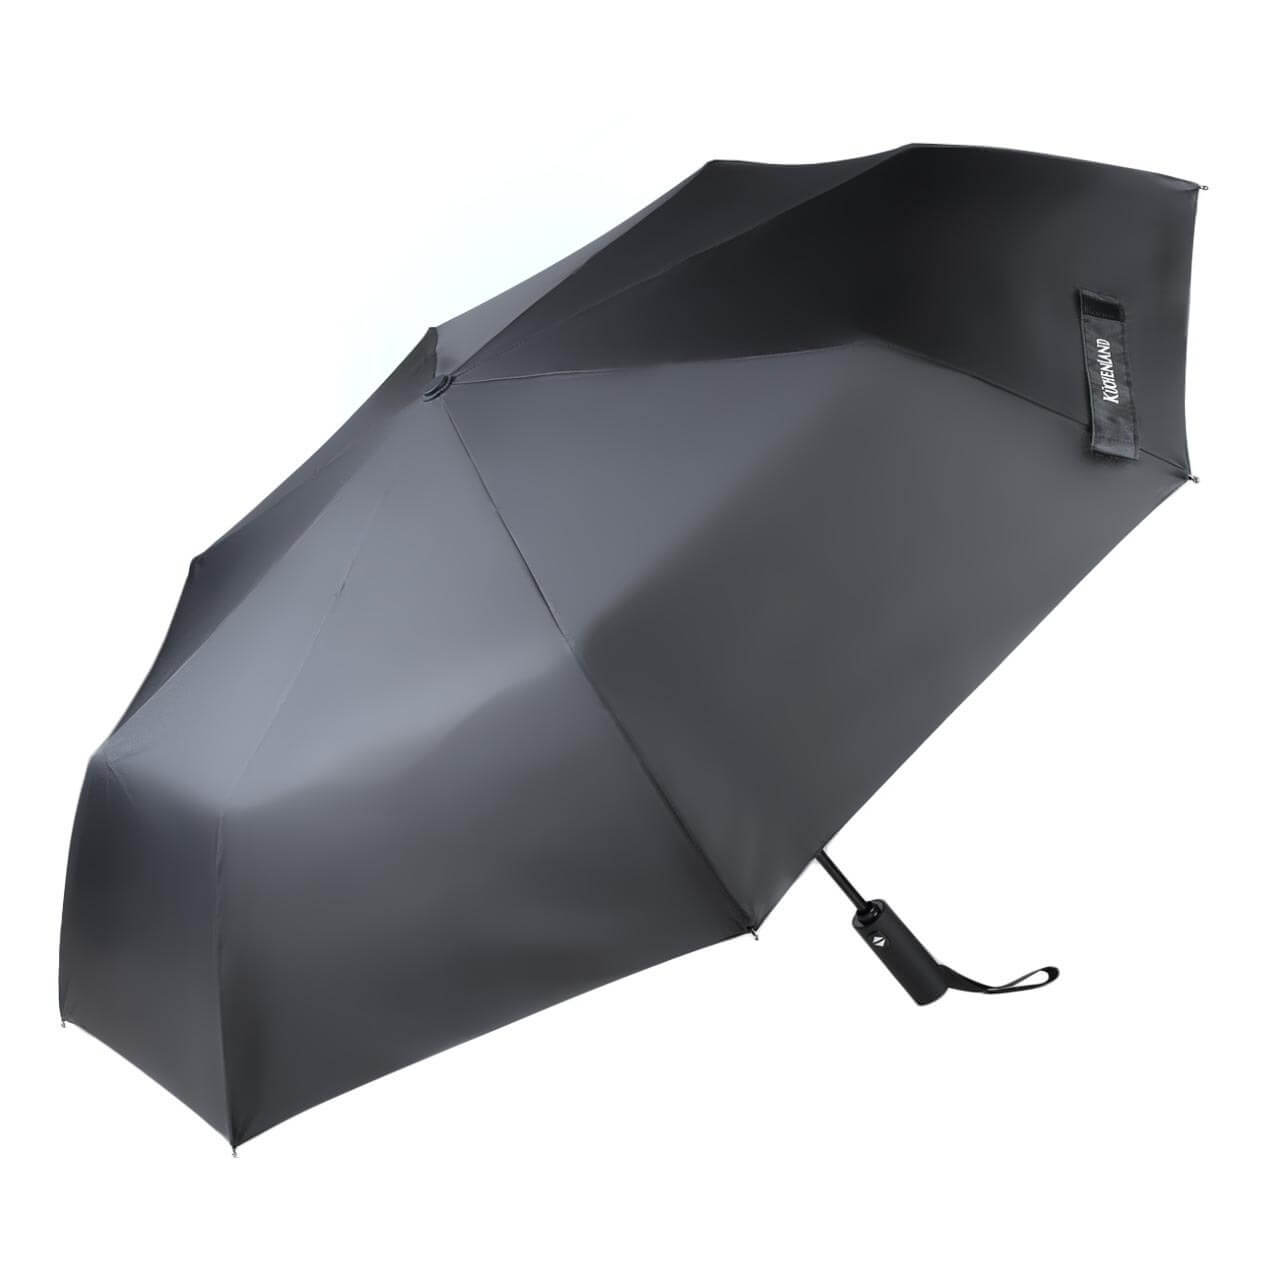 Зонт, 58 см, складной, автоматический, эпонж, черный, Rainy зонт 58 см складной автоматический эпонж rainy